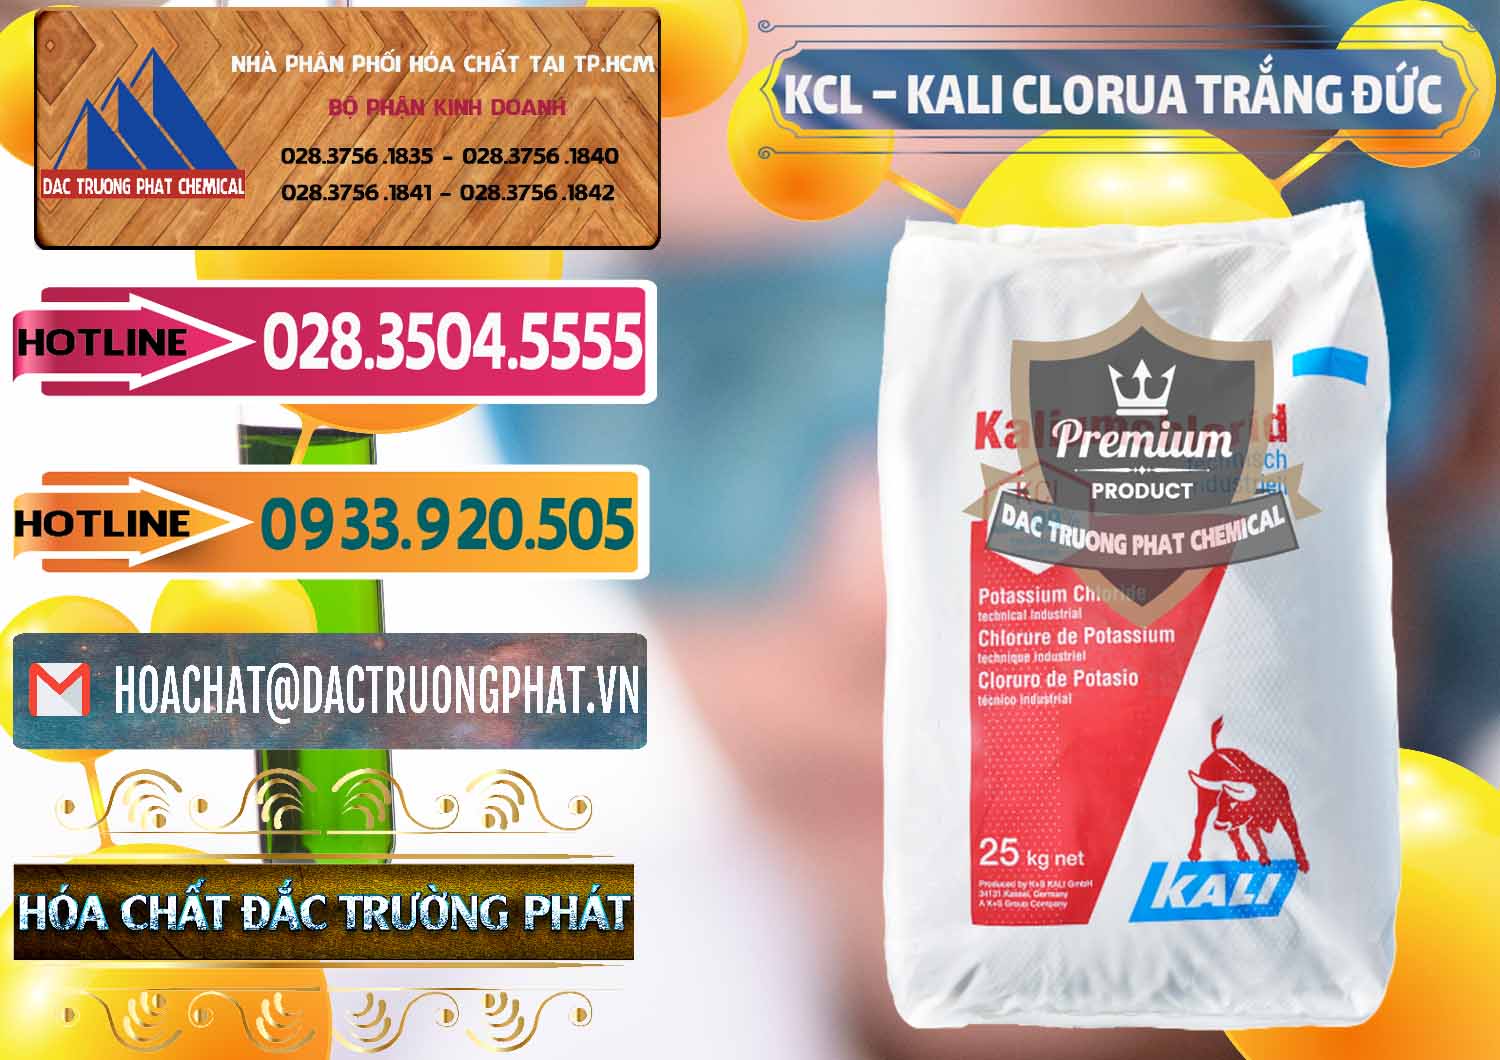 Công ty chuyên cung ứng ( bán ) KCL – Kali Clorua Trắng Đức Germany - 0086 - Công ty chuyên bán và cung cấp hóa chất tại TP.HCM - dactruongphat.vn